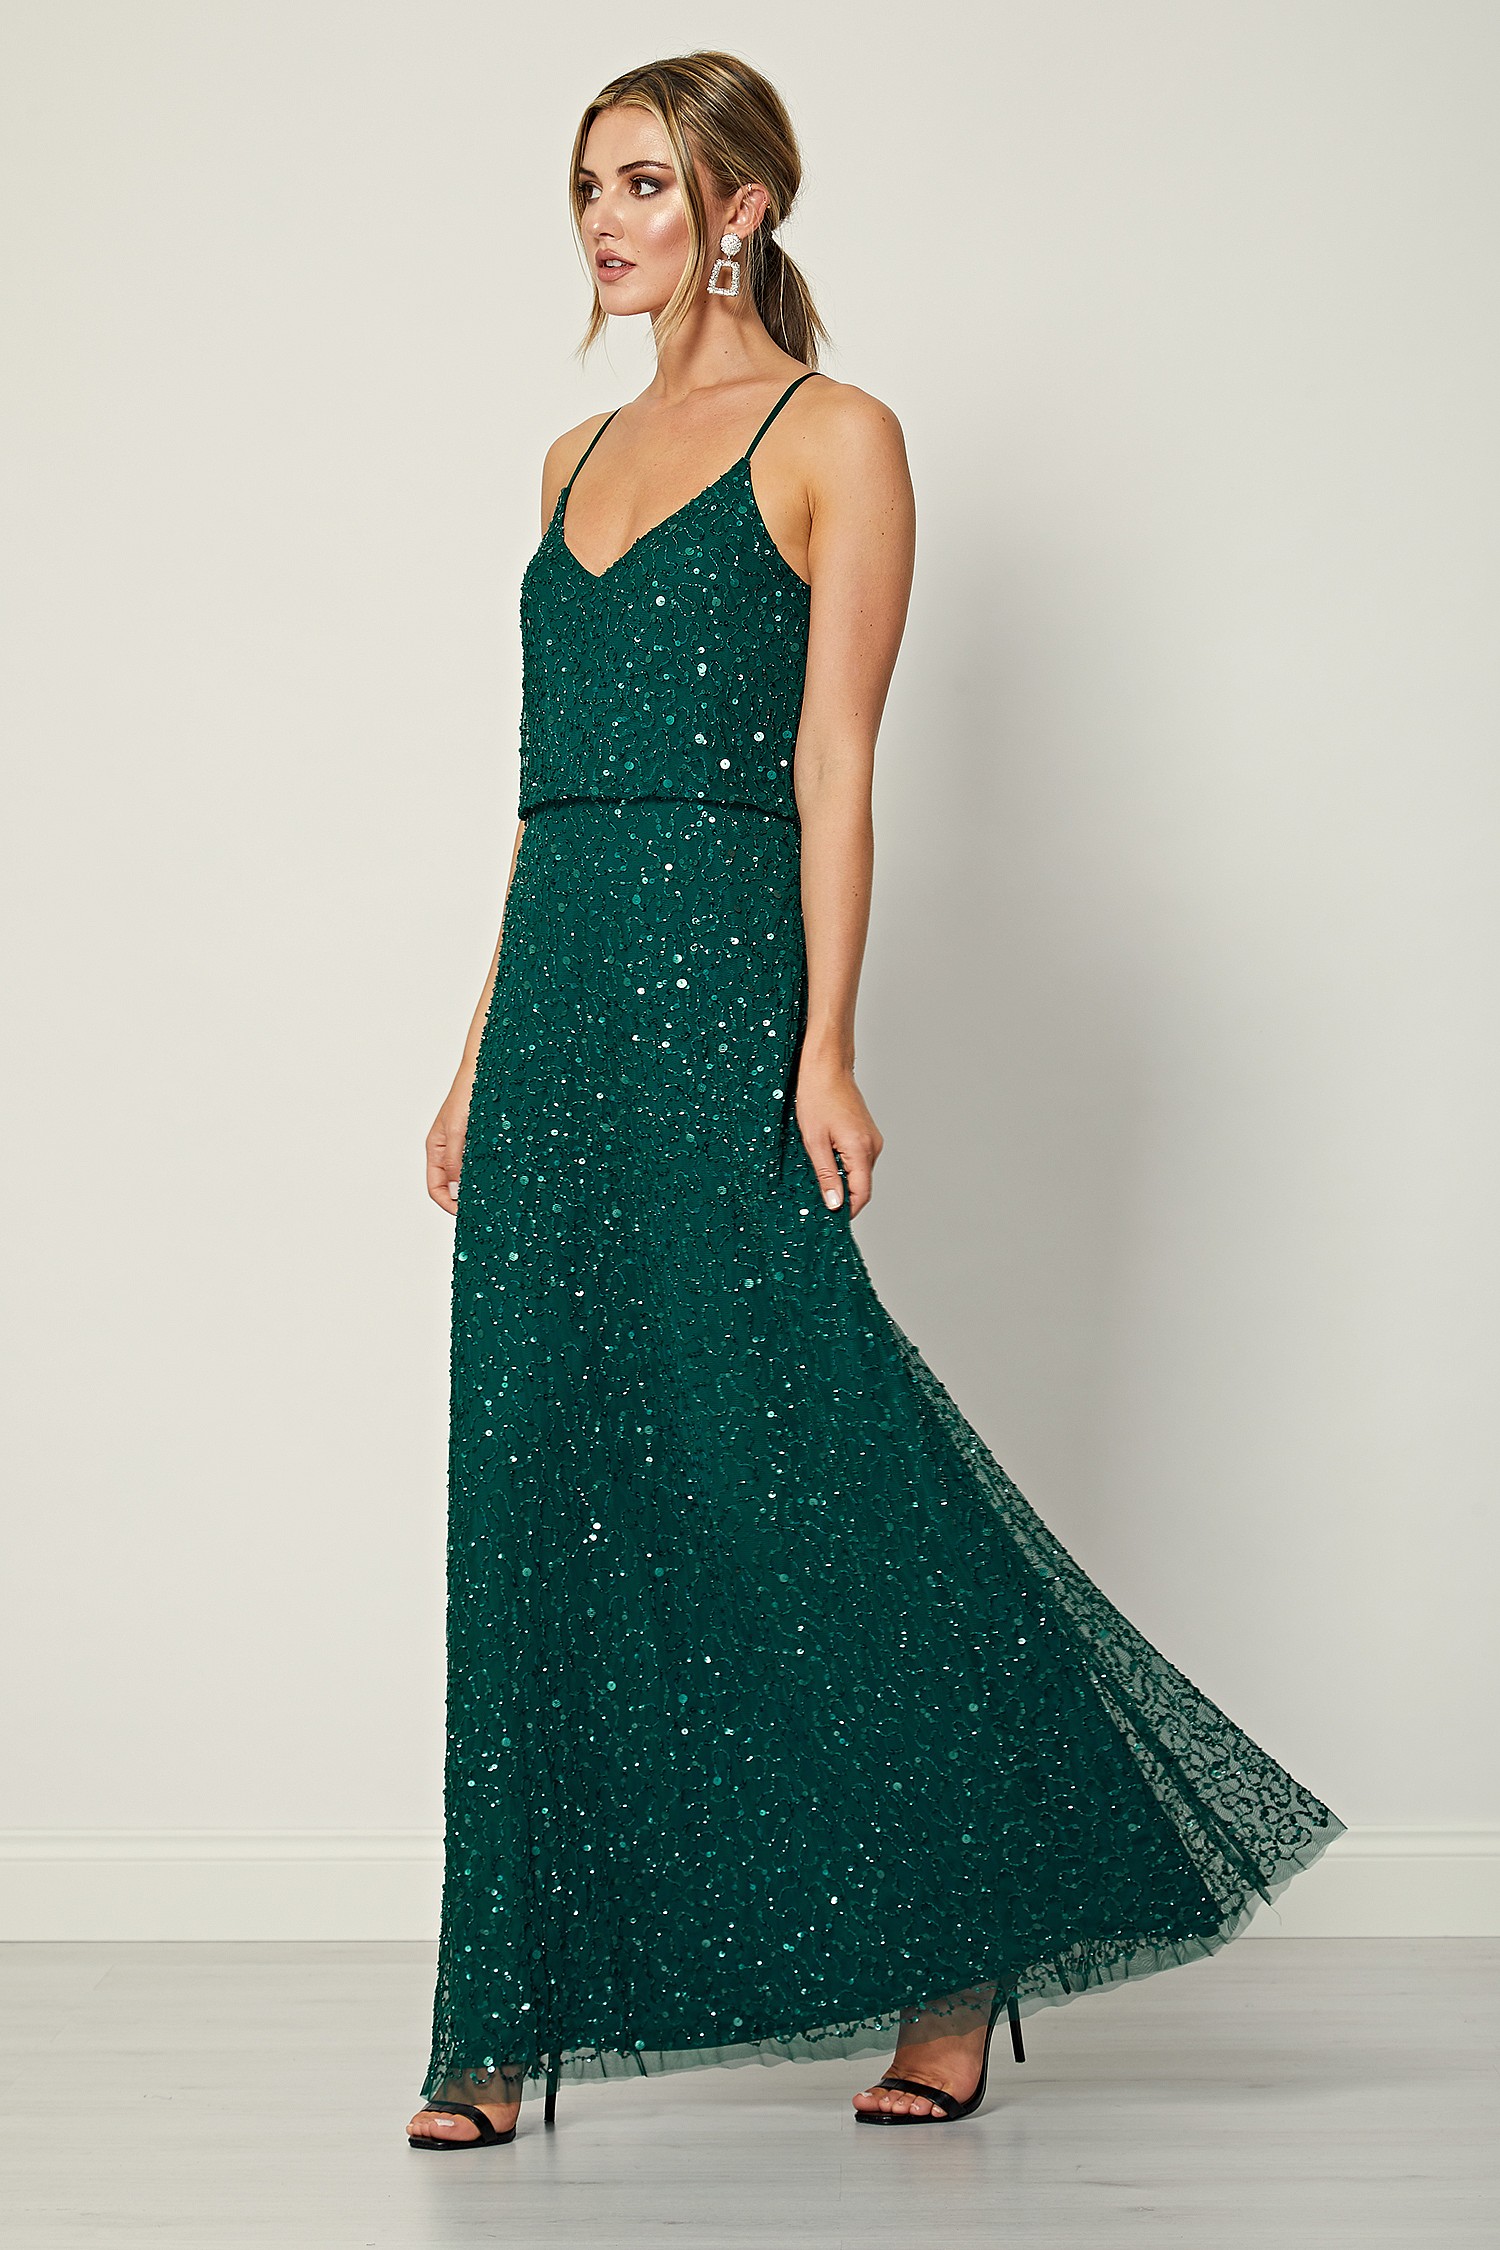 Emerald Green Sequins Dress Online Shop ...